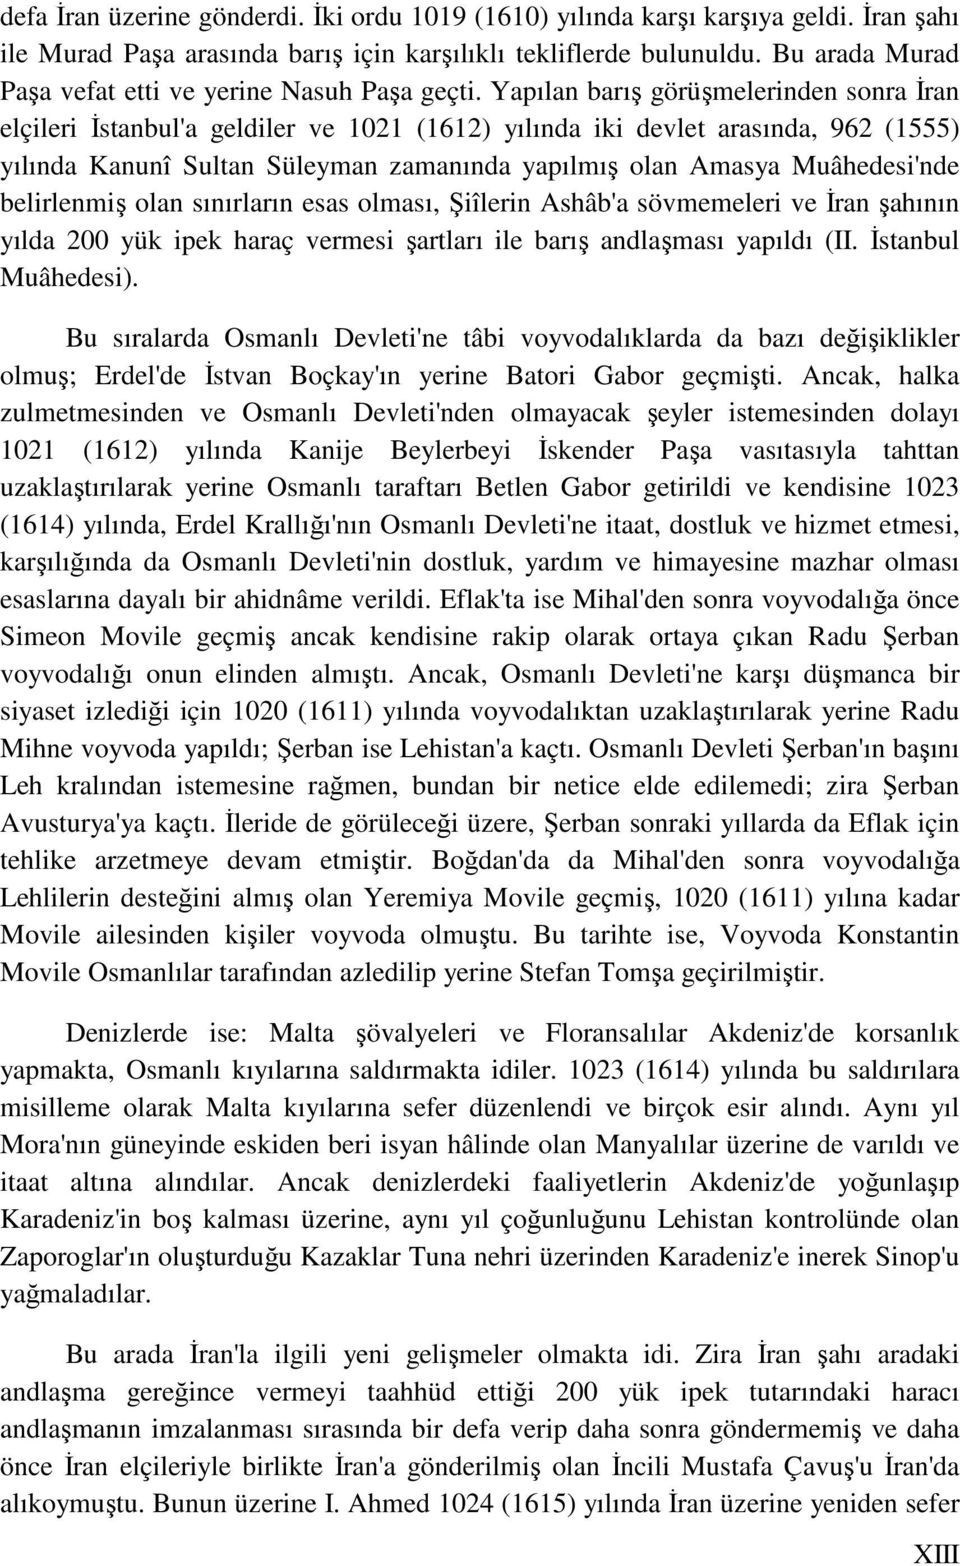 Yapılan barış görüşmelerinden sonra Đran elçileri Đstanbul'a geldiler ve 1021 (1612) yılında iki devlet arasında, 962 (1555) yılında Kanunî Sultan Süleyman zamanında yapılmış olan Amasya